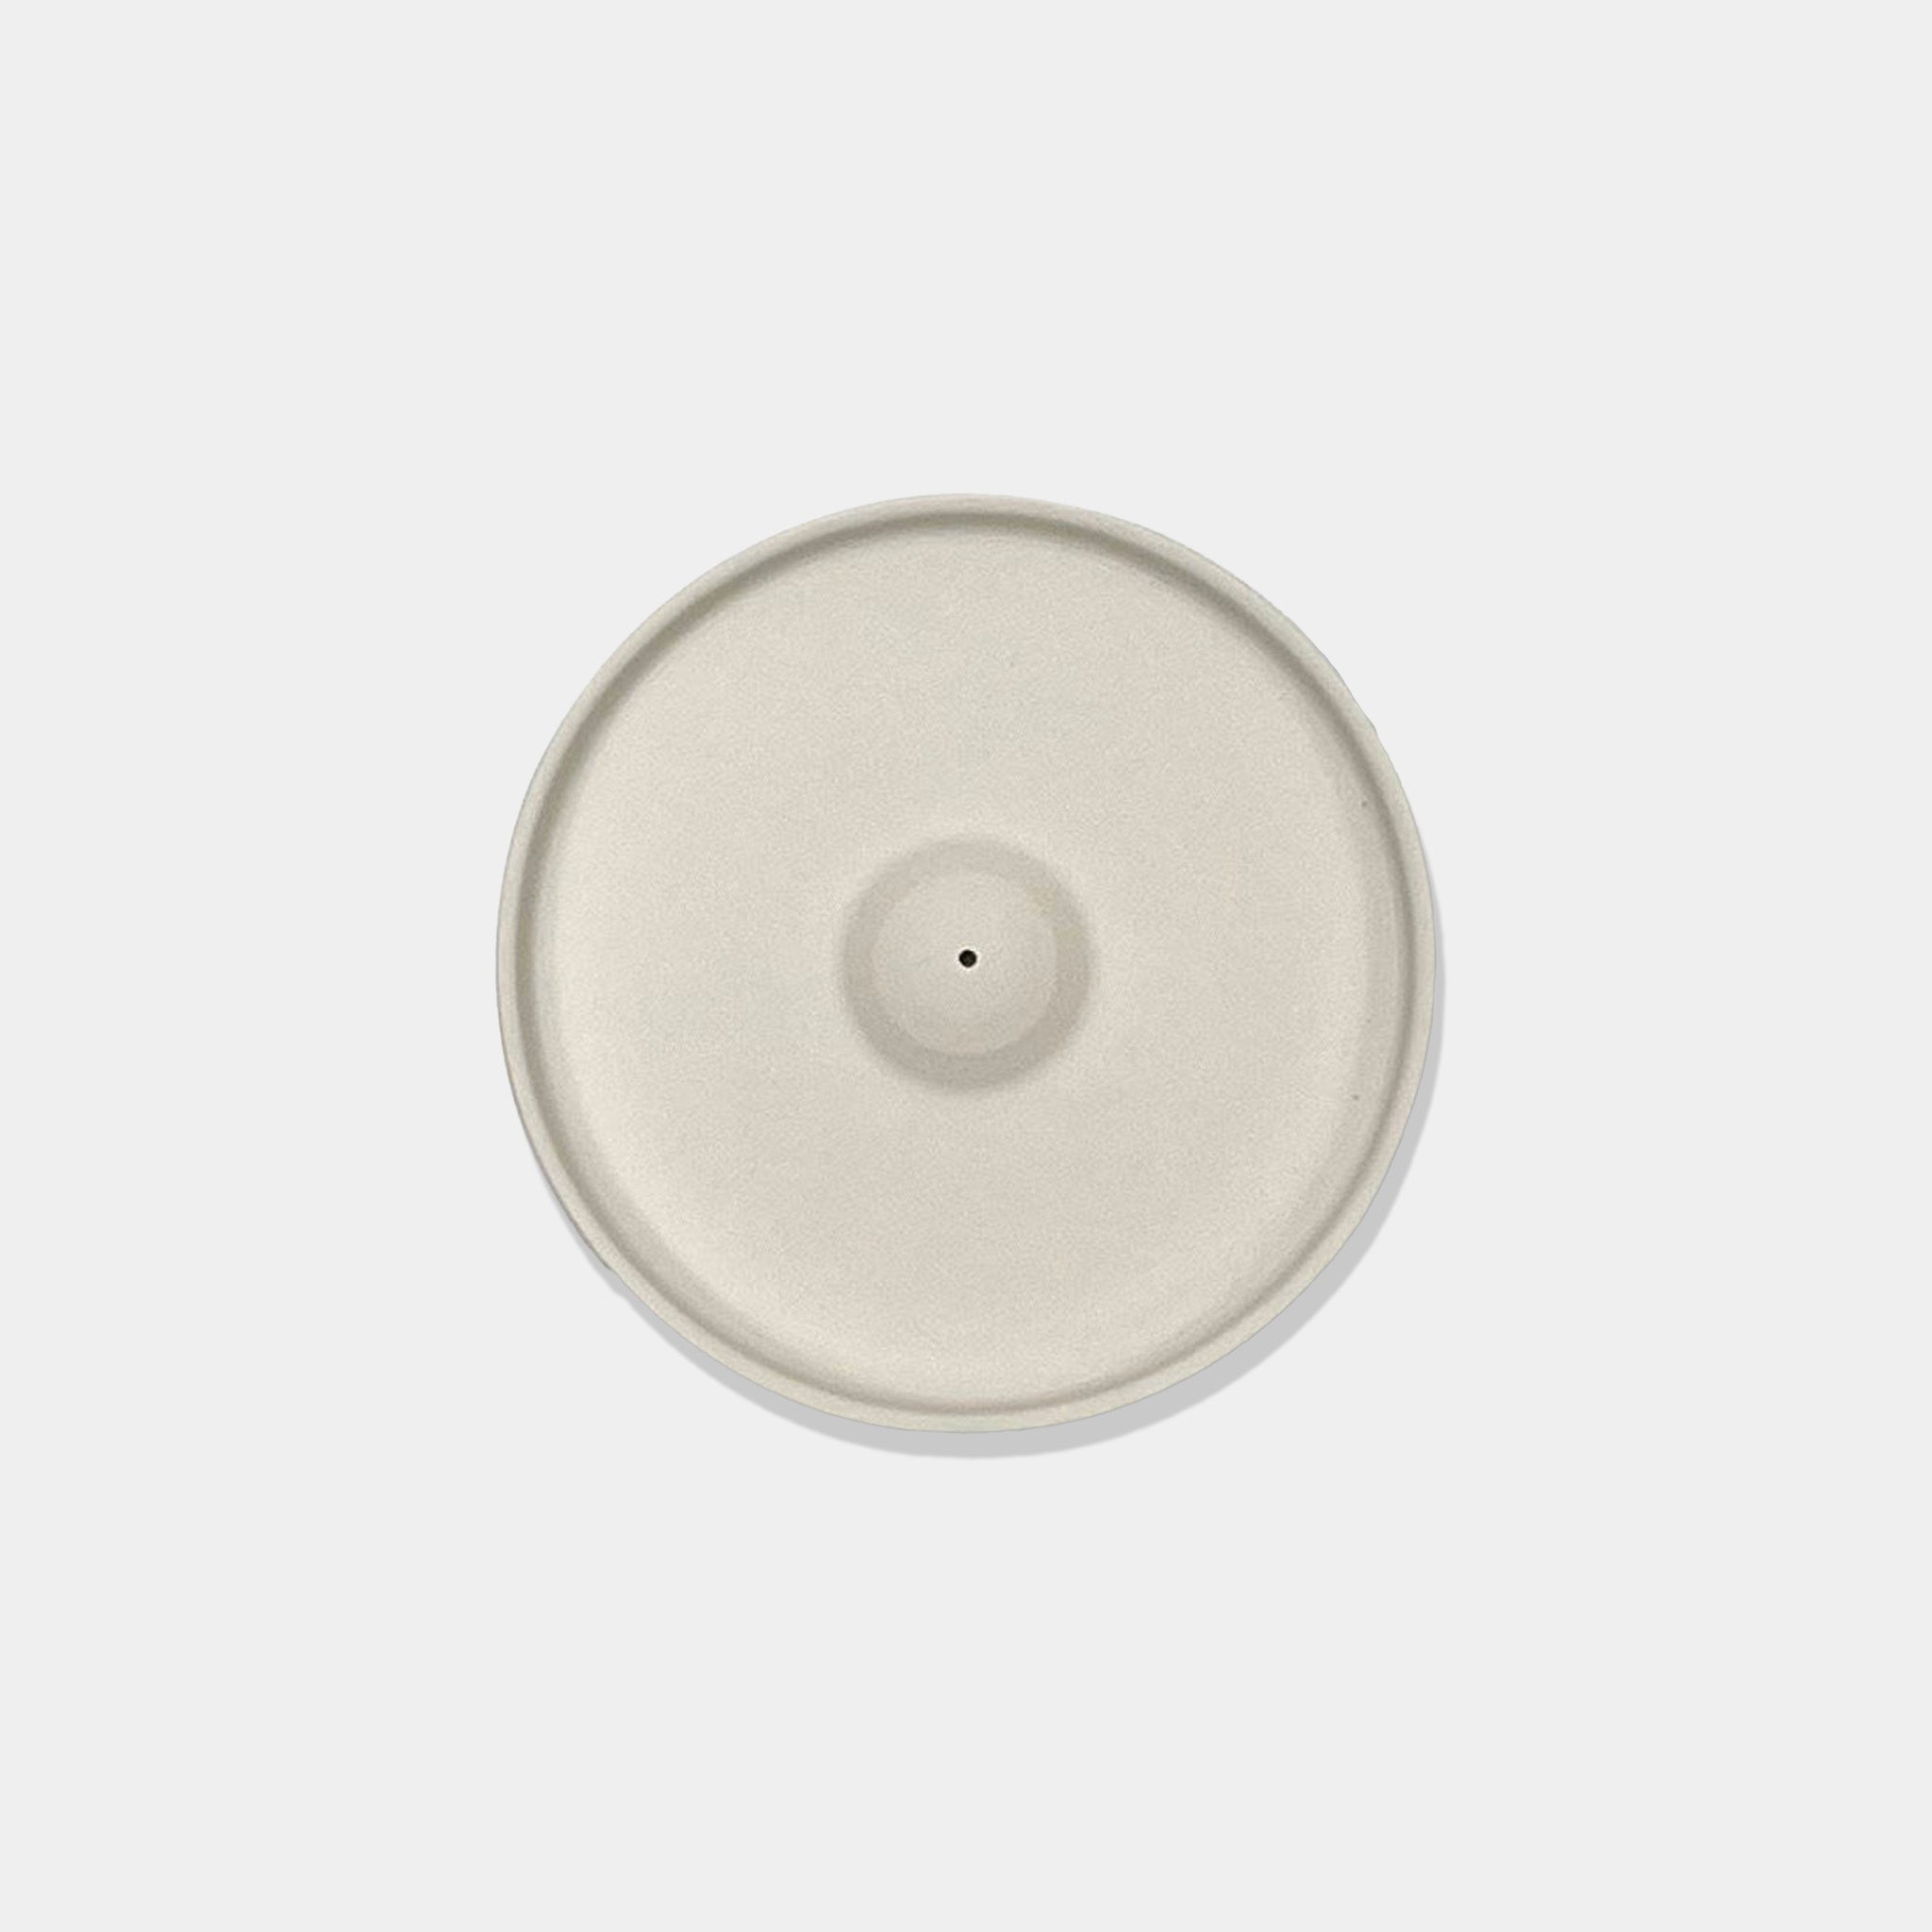 Incense plate ceramic | White 